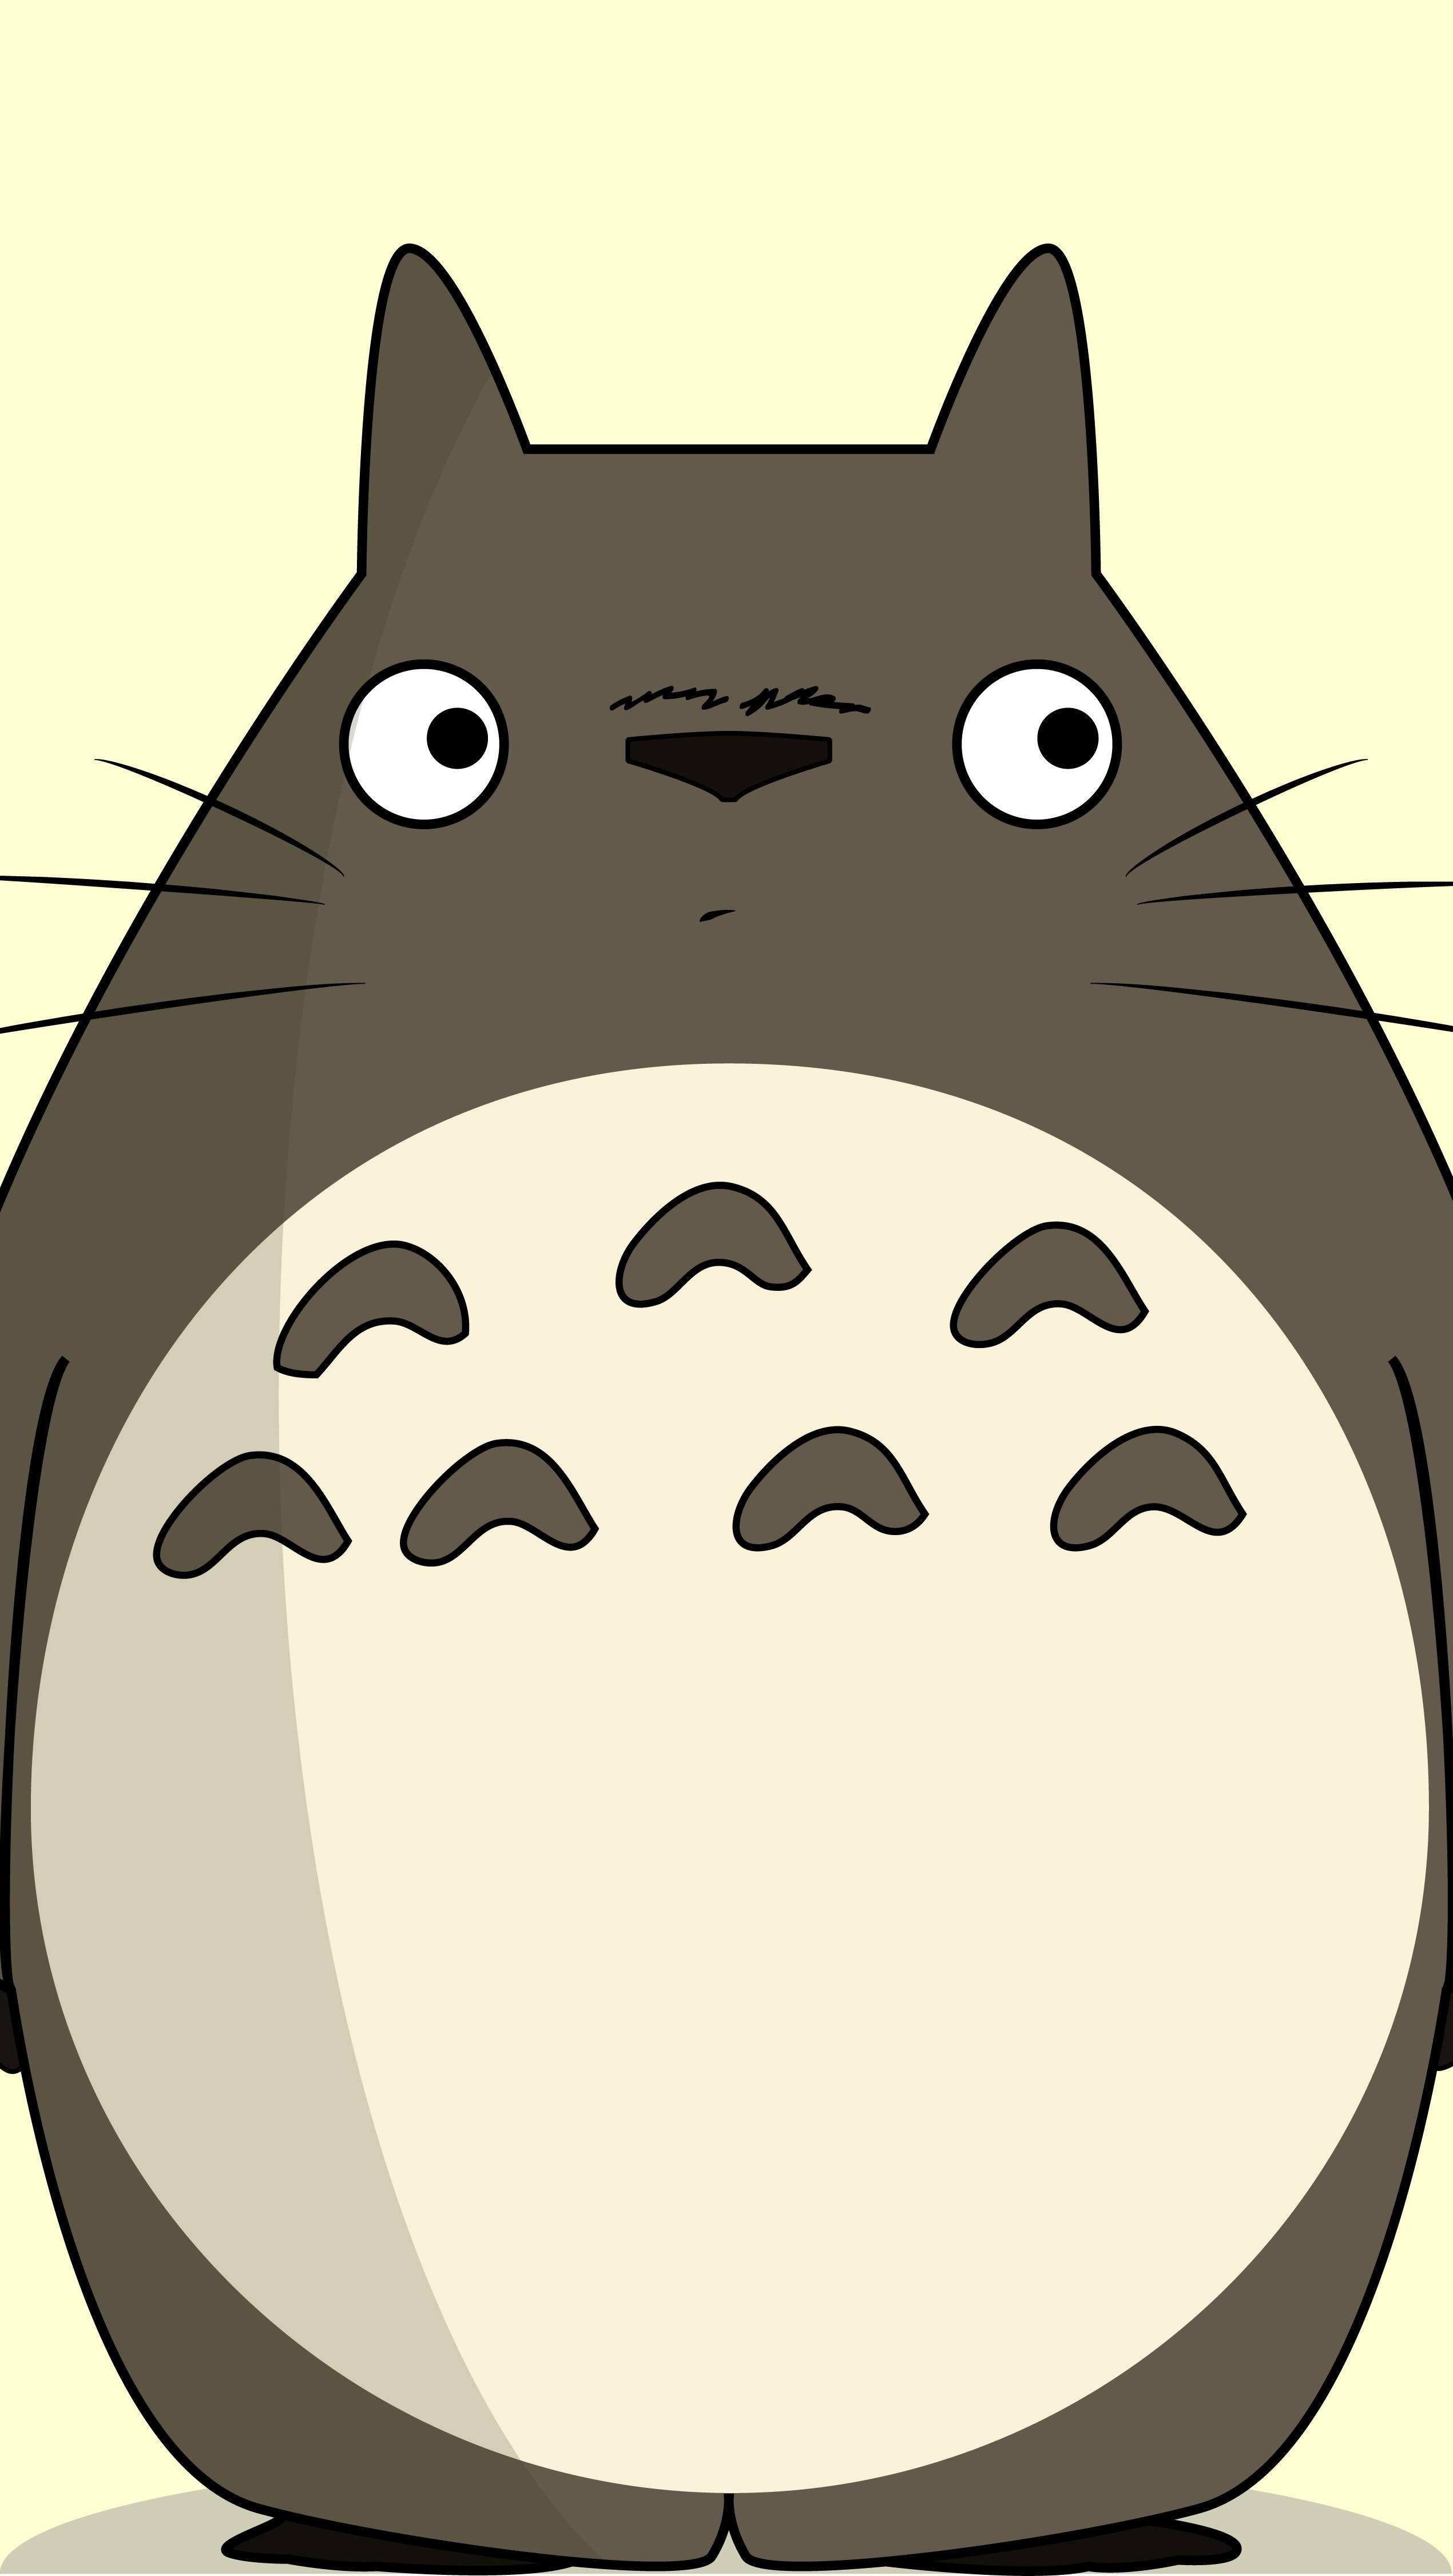 Totoro y Kaonashi (No-Face) de El viaje de Chihiro Anime Fondo de pantalla  ID:5035